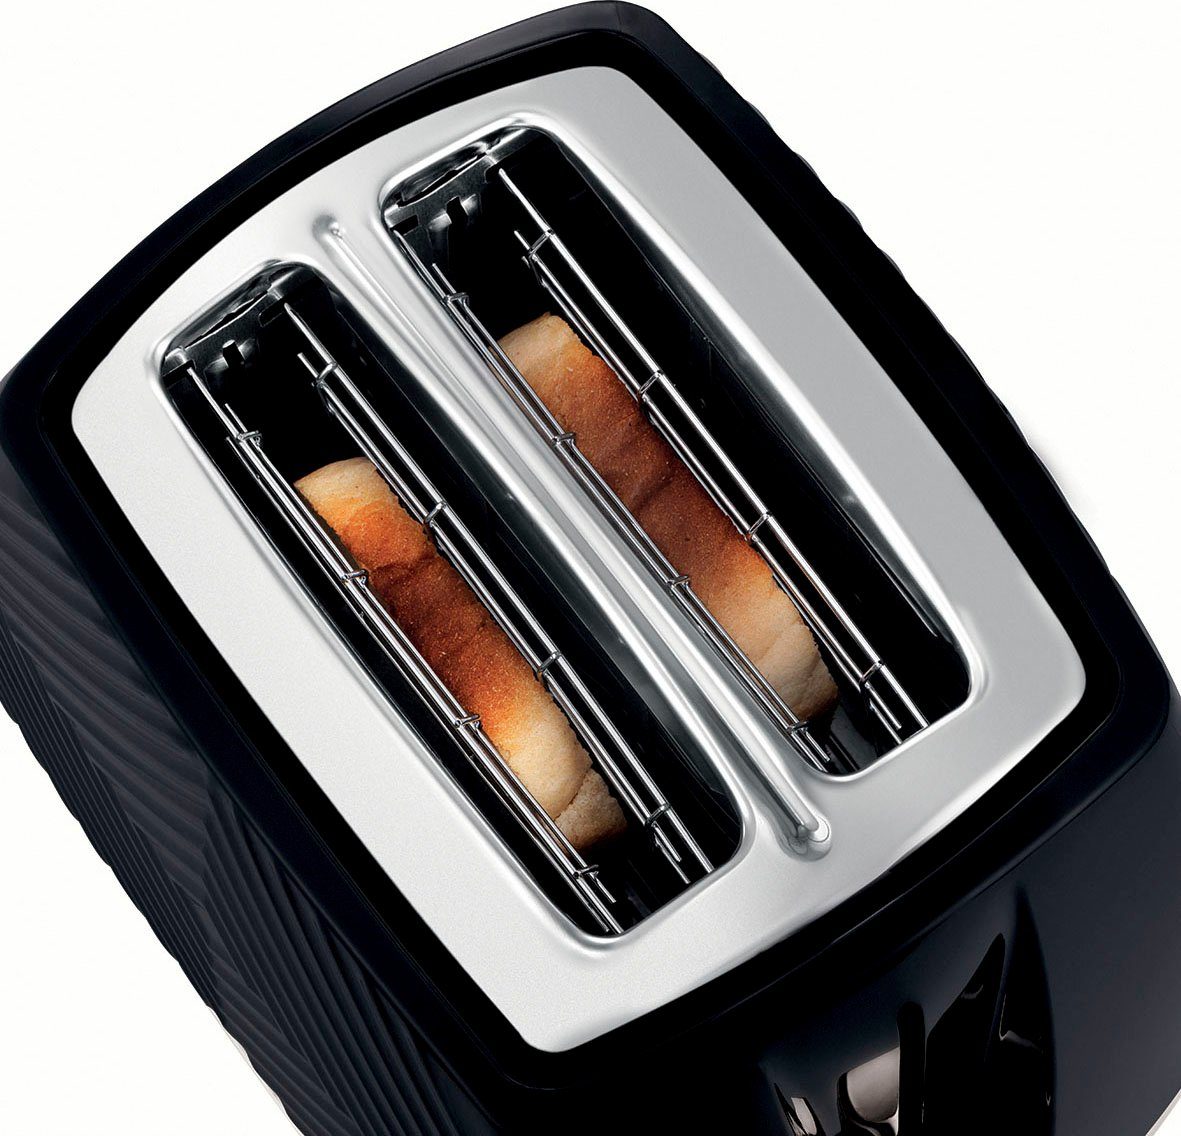 HOBBS schwarz, Toaster 850 W - Groove 26390-56, RUSSELL Brötchenaufsatz 2 Krümelschublade, Watt Schlitze, & 850